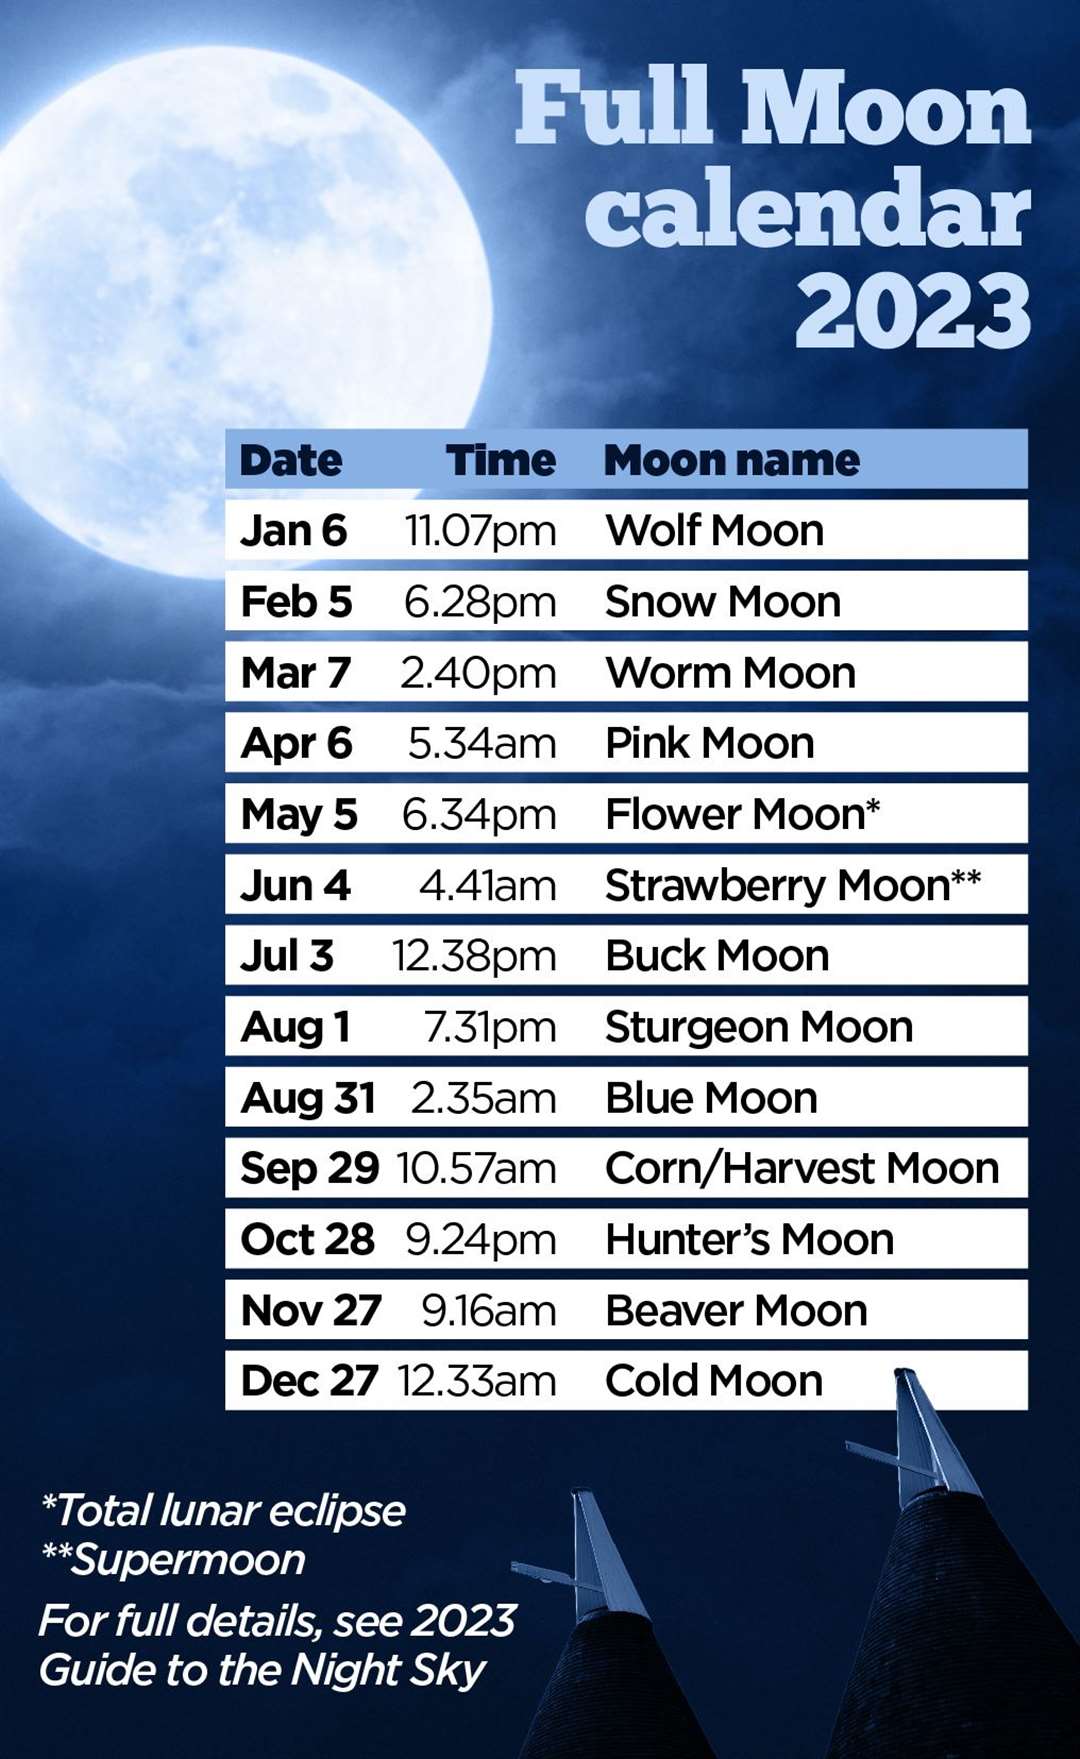 The Full Moon calendar for 2023